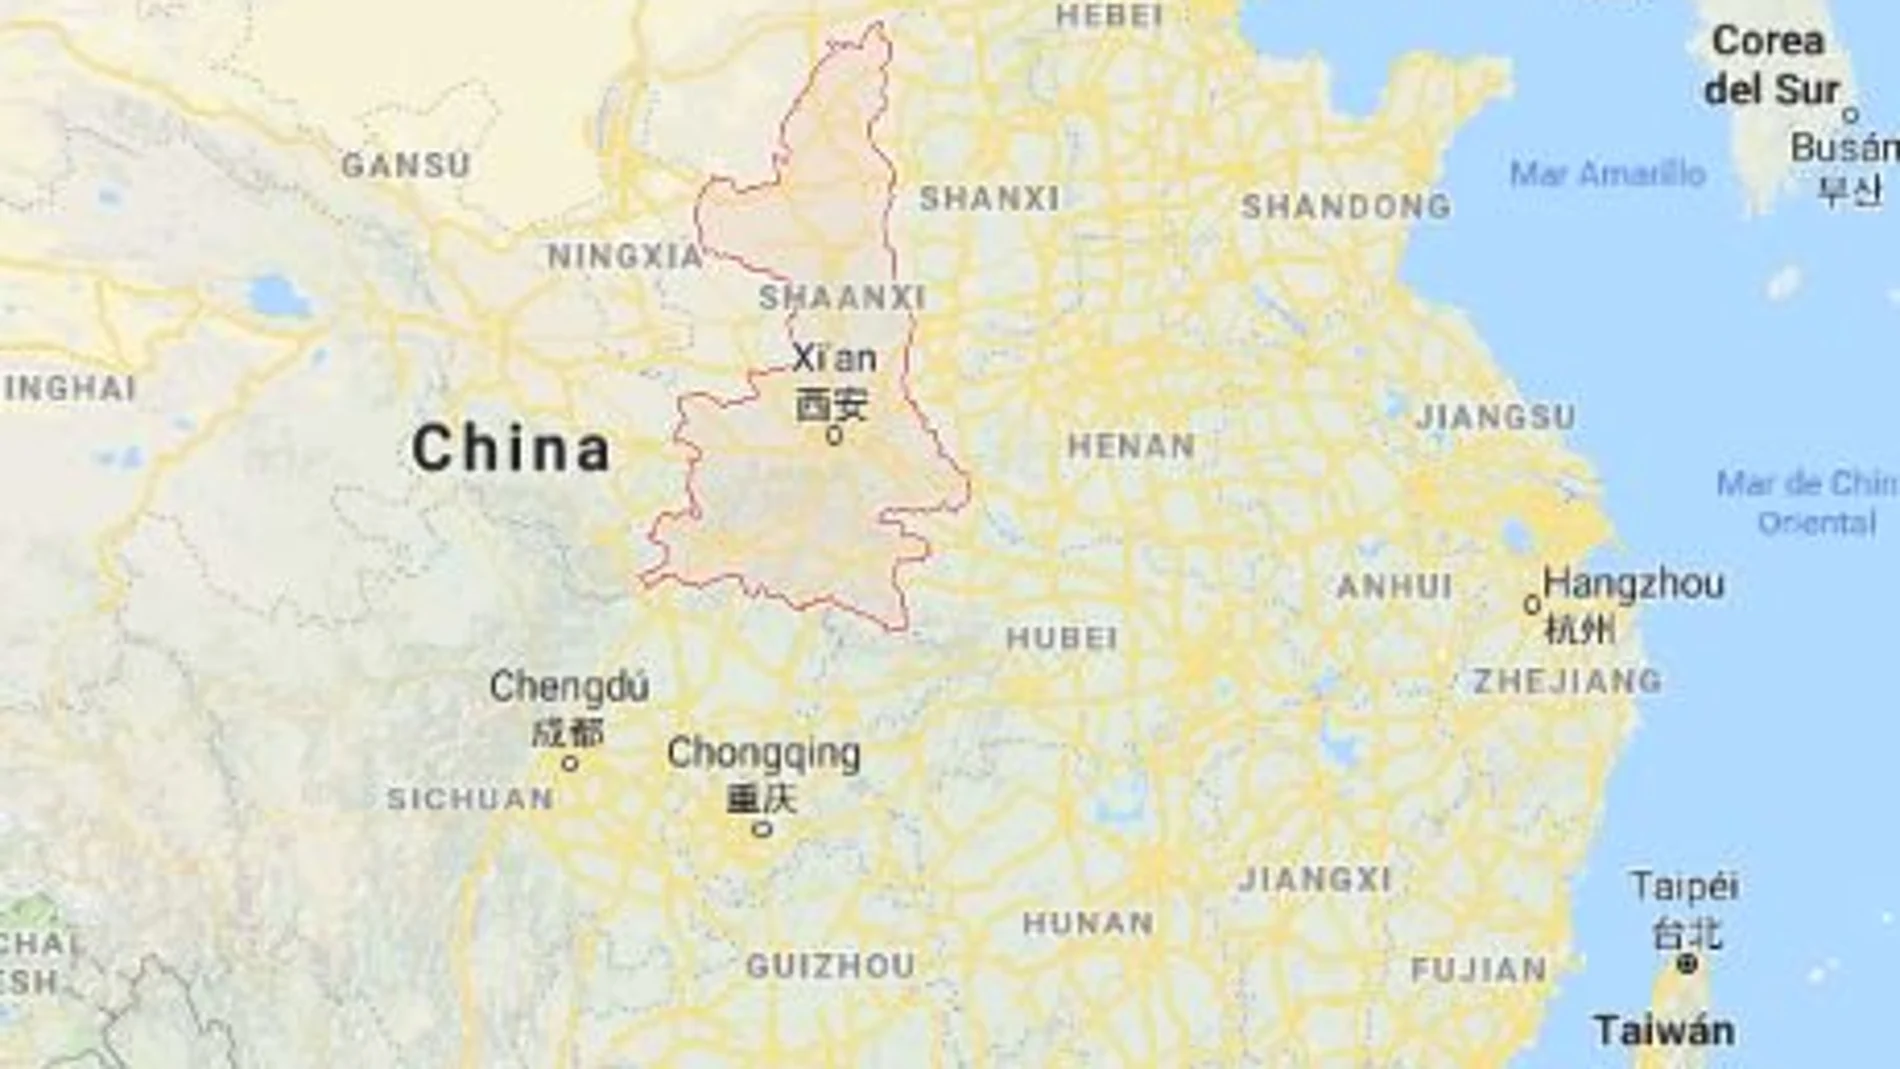 21 mineros murieron en el derrumbe de una mina de carbón en Lijiagou, en la provincia de Shaanxi, en el centro China